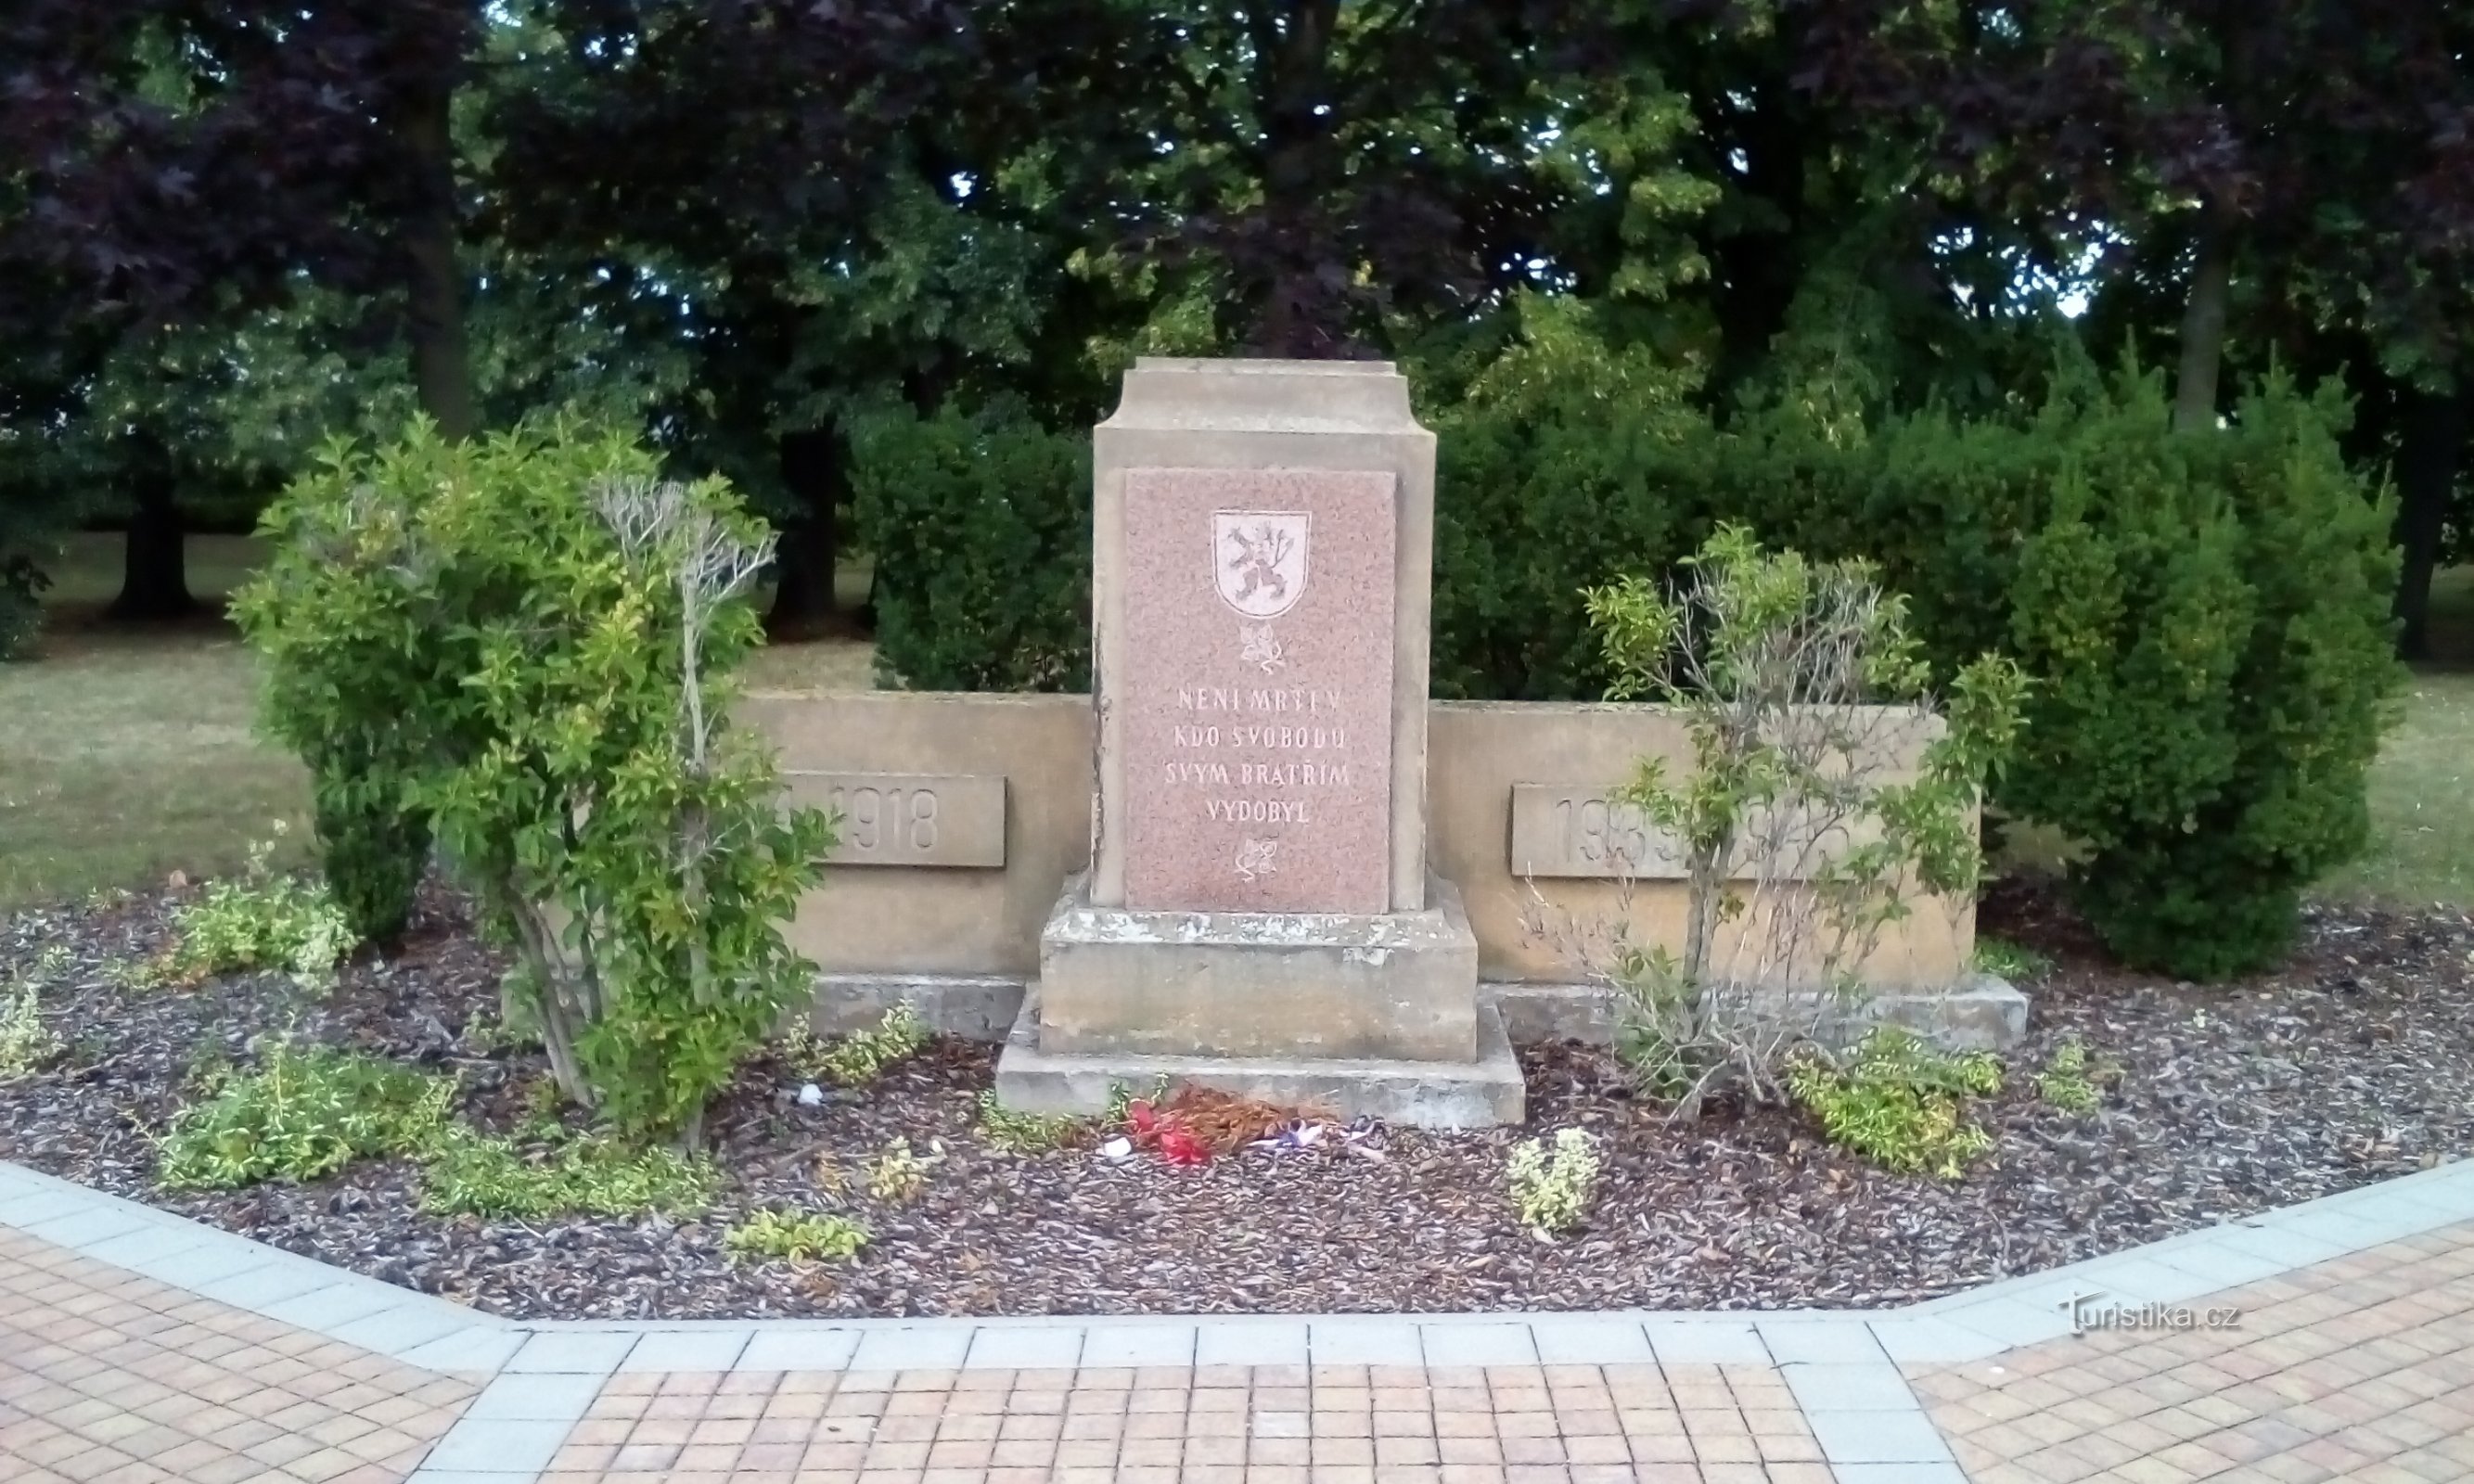 Monumentul celor care au murit în războaiele mondiale la Pardubice